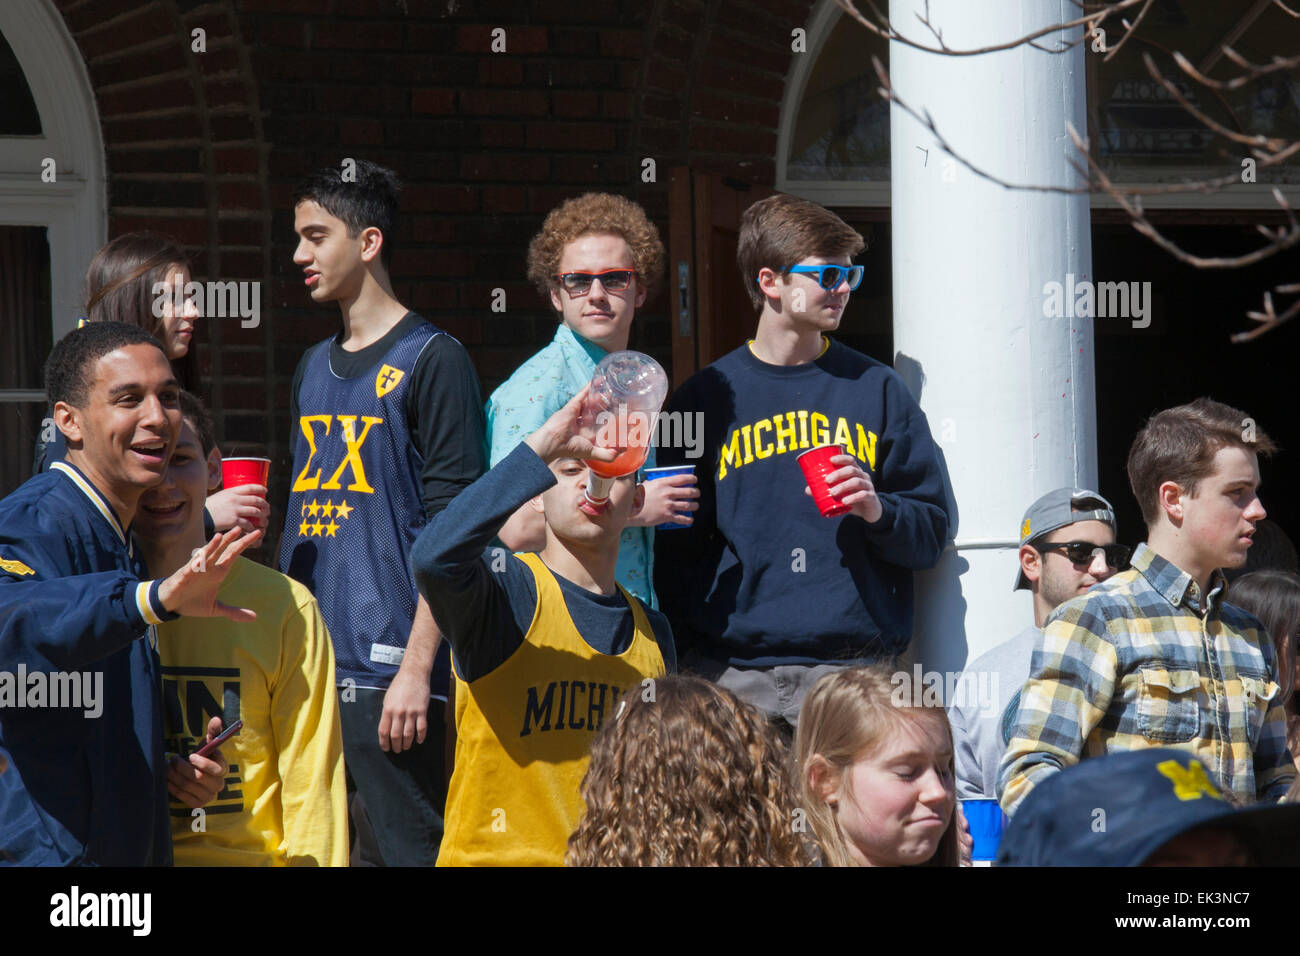 Ann Arbor, Michigan - Studenten an der University of Michigan versammeln sich im Sigma Chi Bruderschaft House, Alkohol zu trinken. Stockfoto